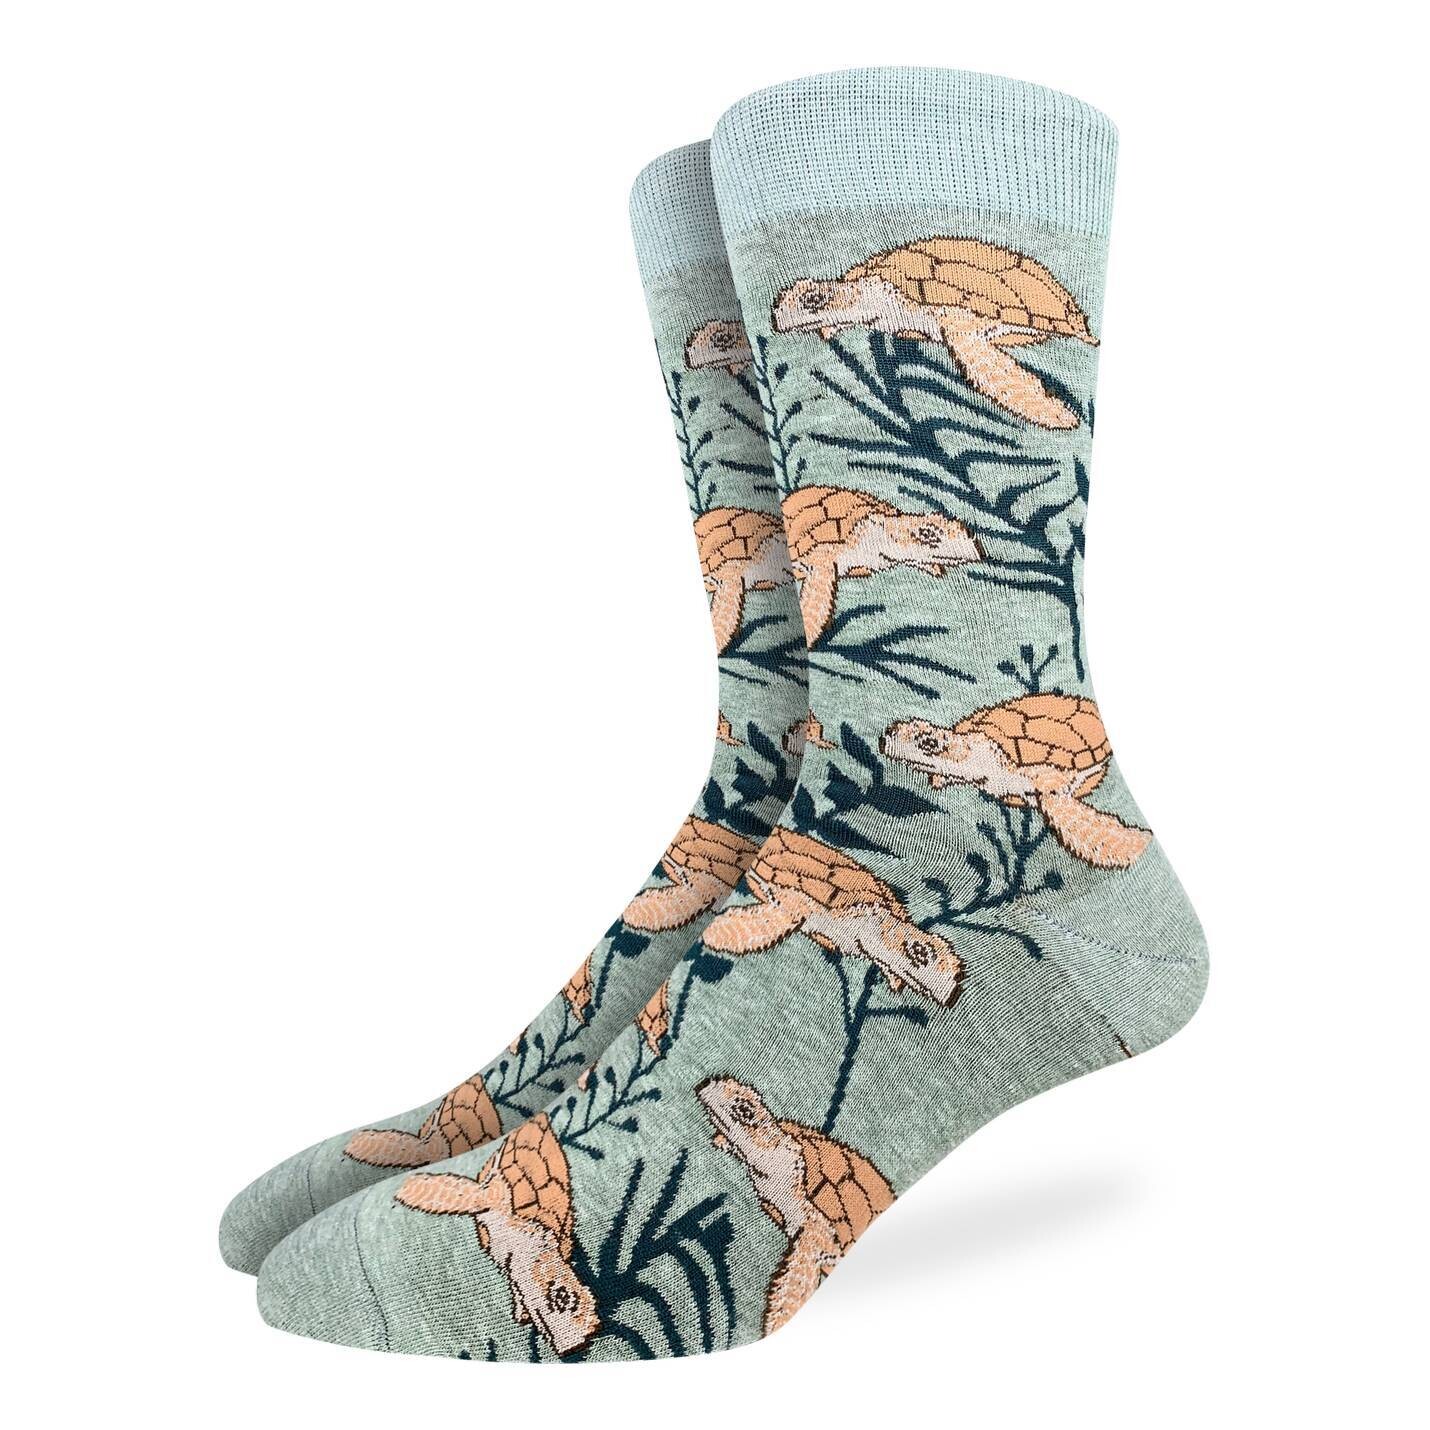 Sea Turtle socks | M/L adult sizes | Good Luck Sock